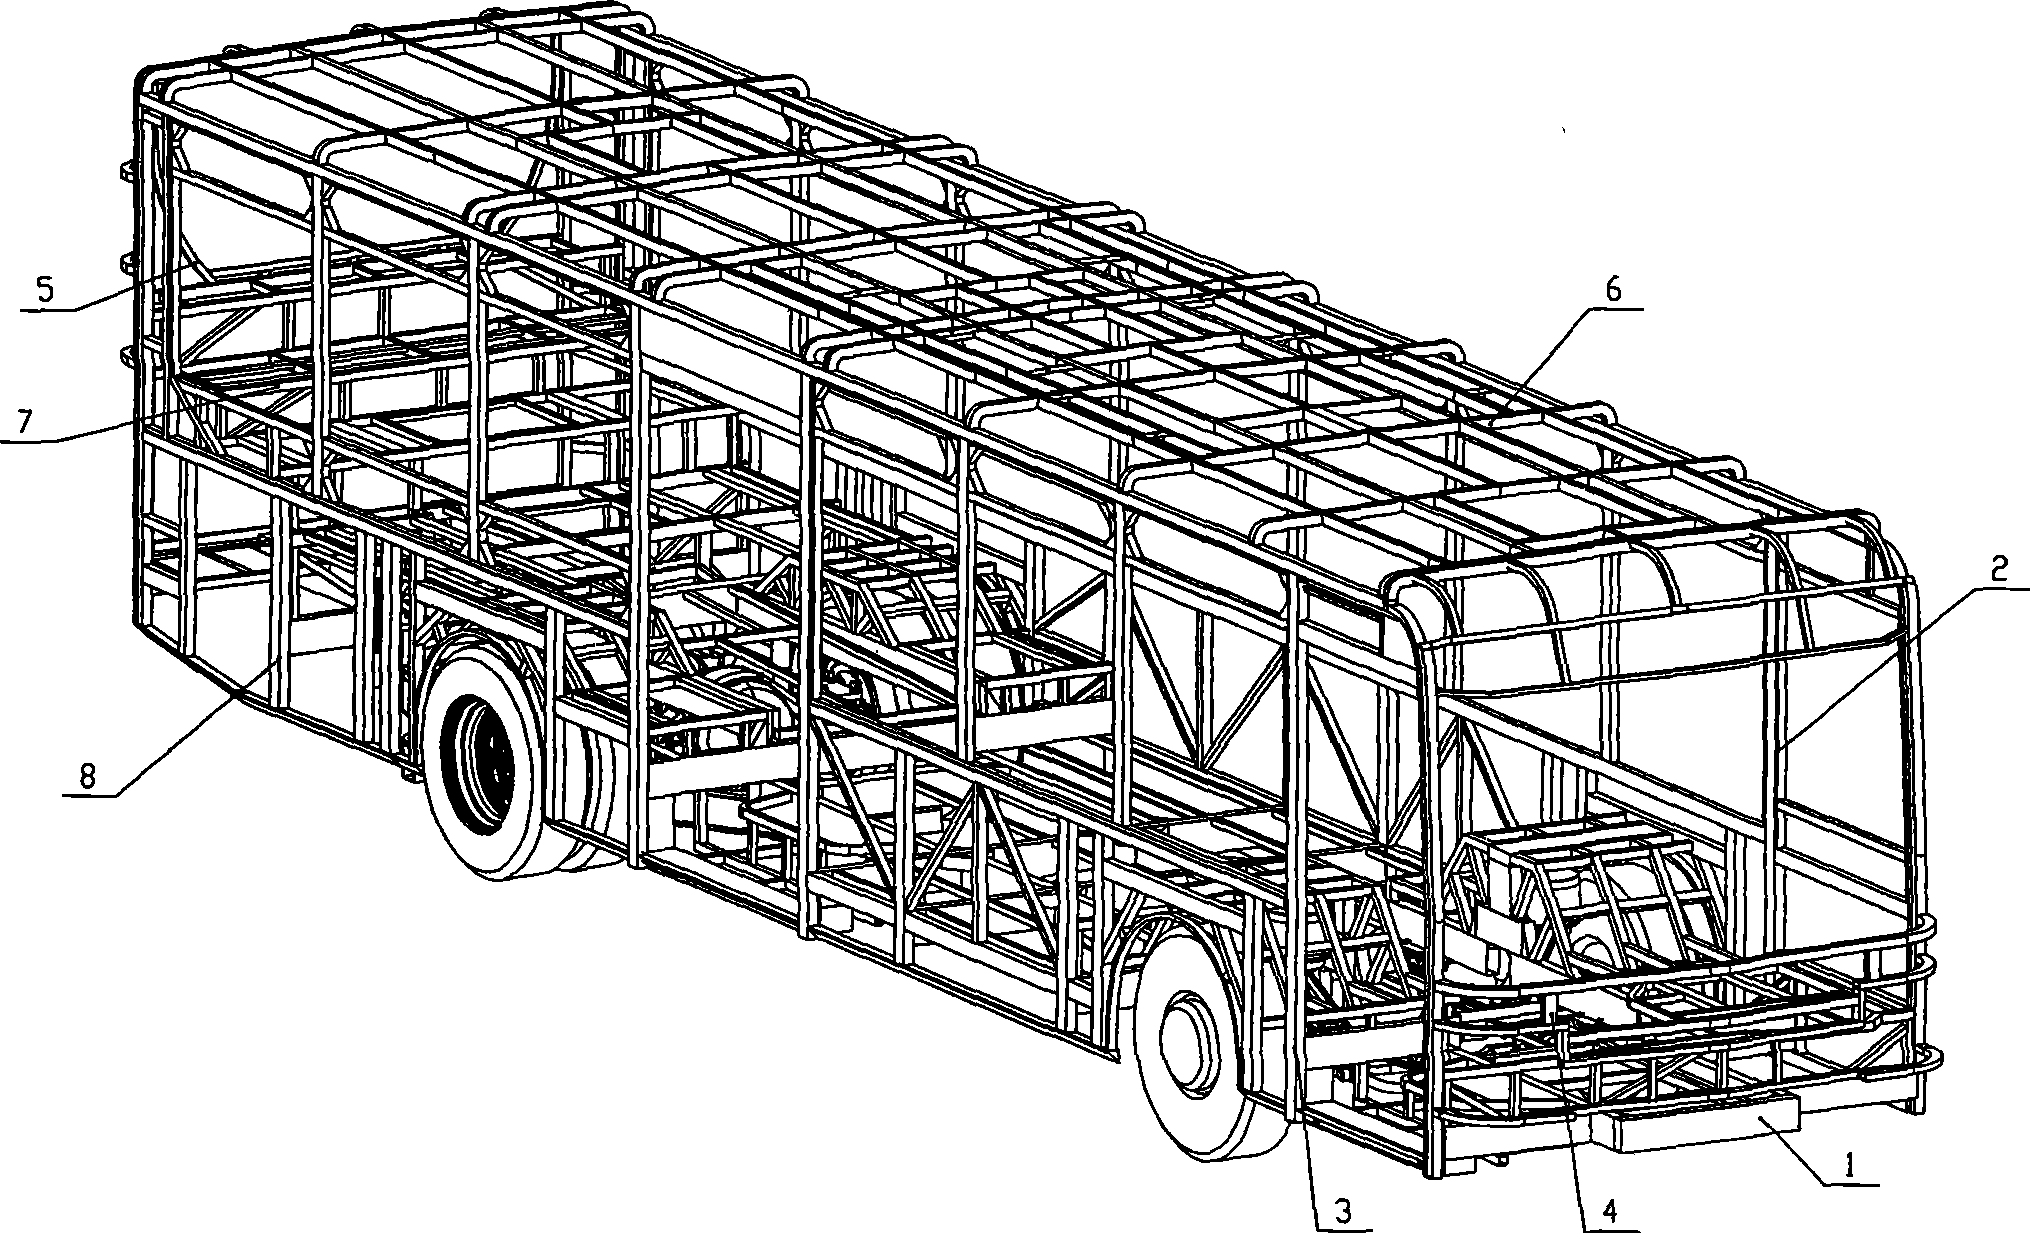 Motor bus unitary body with large-sized rectangular tube underframe